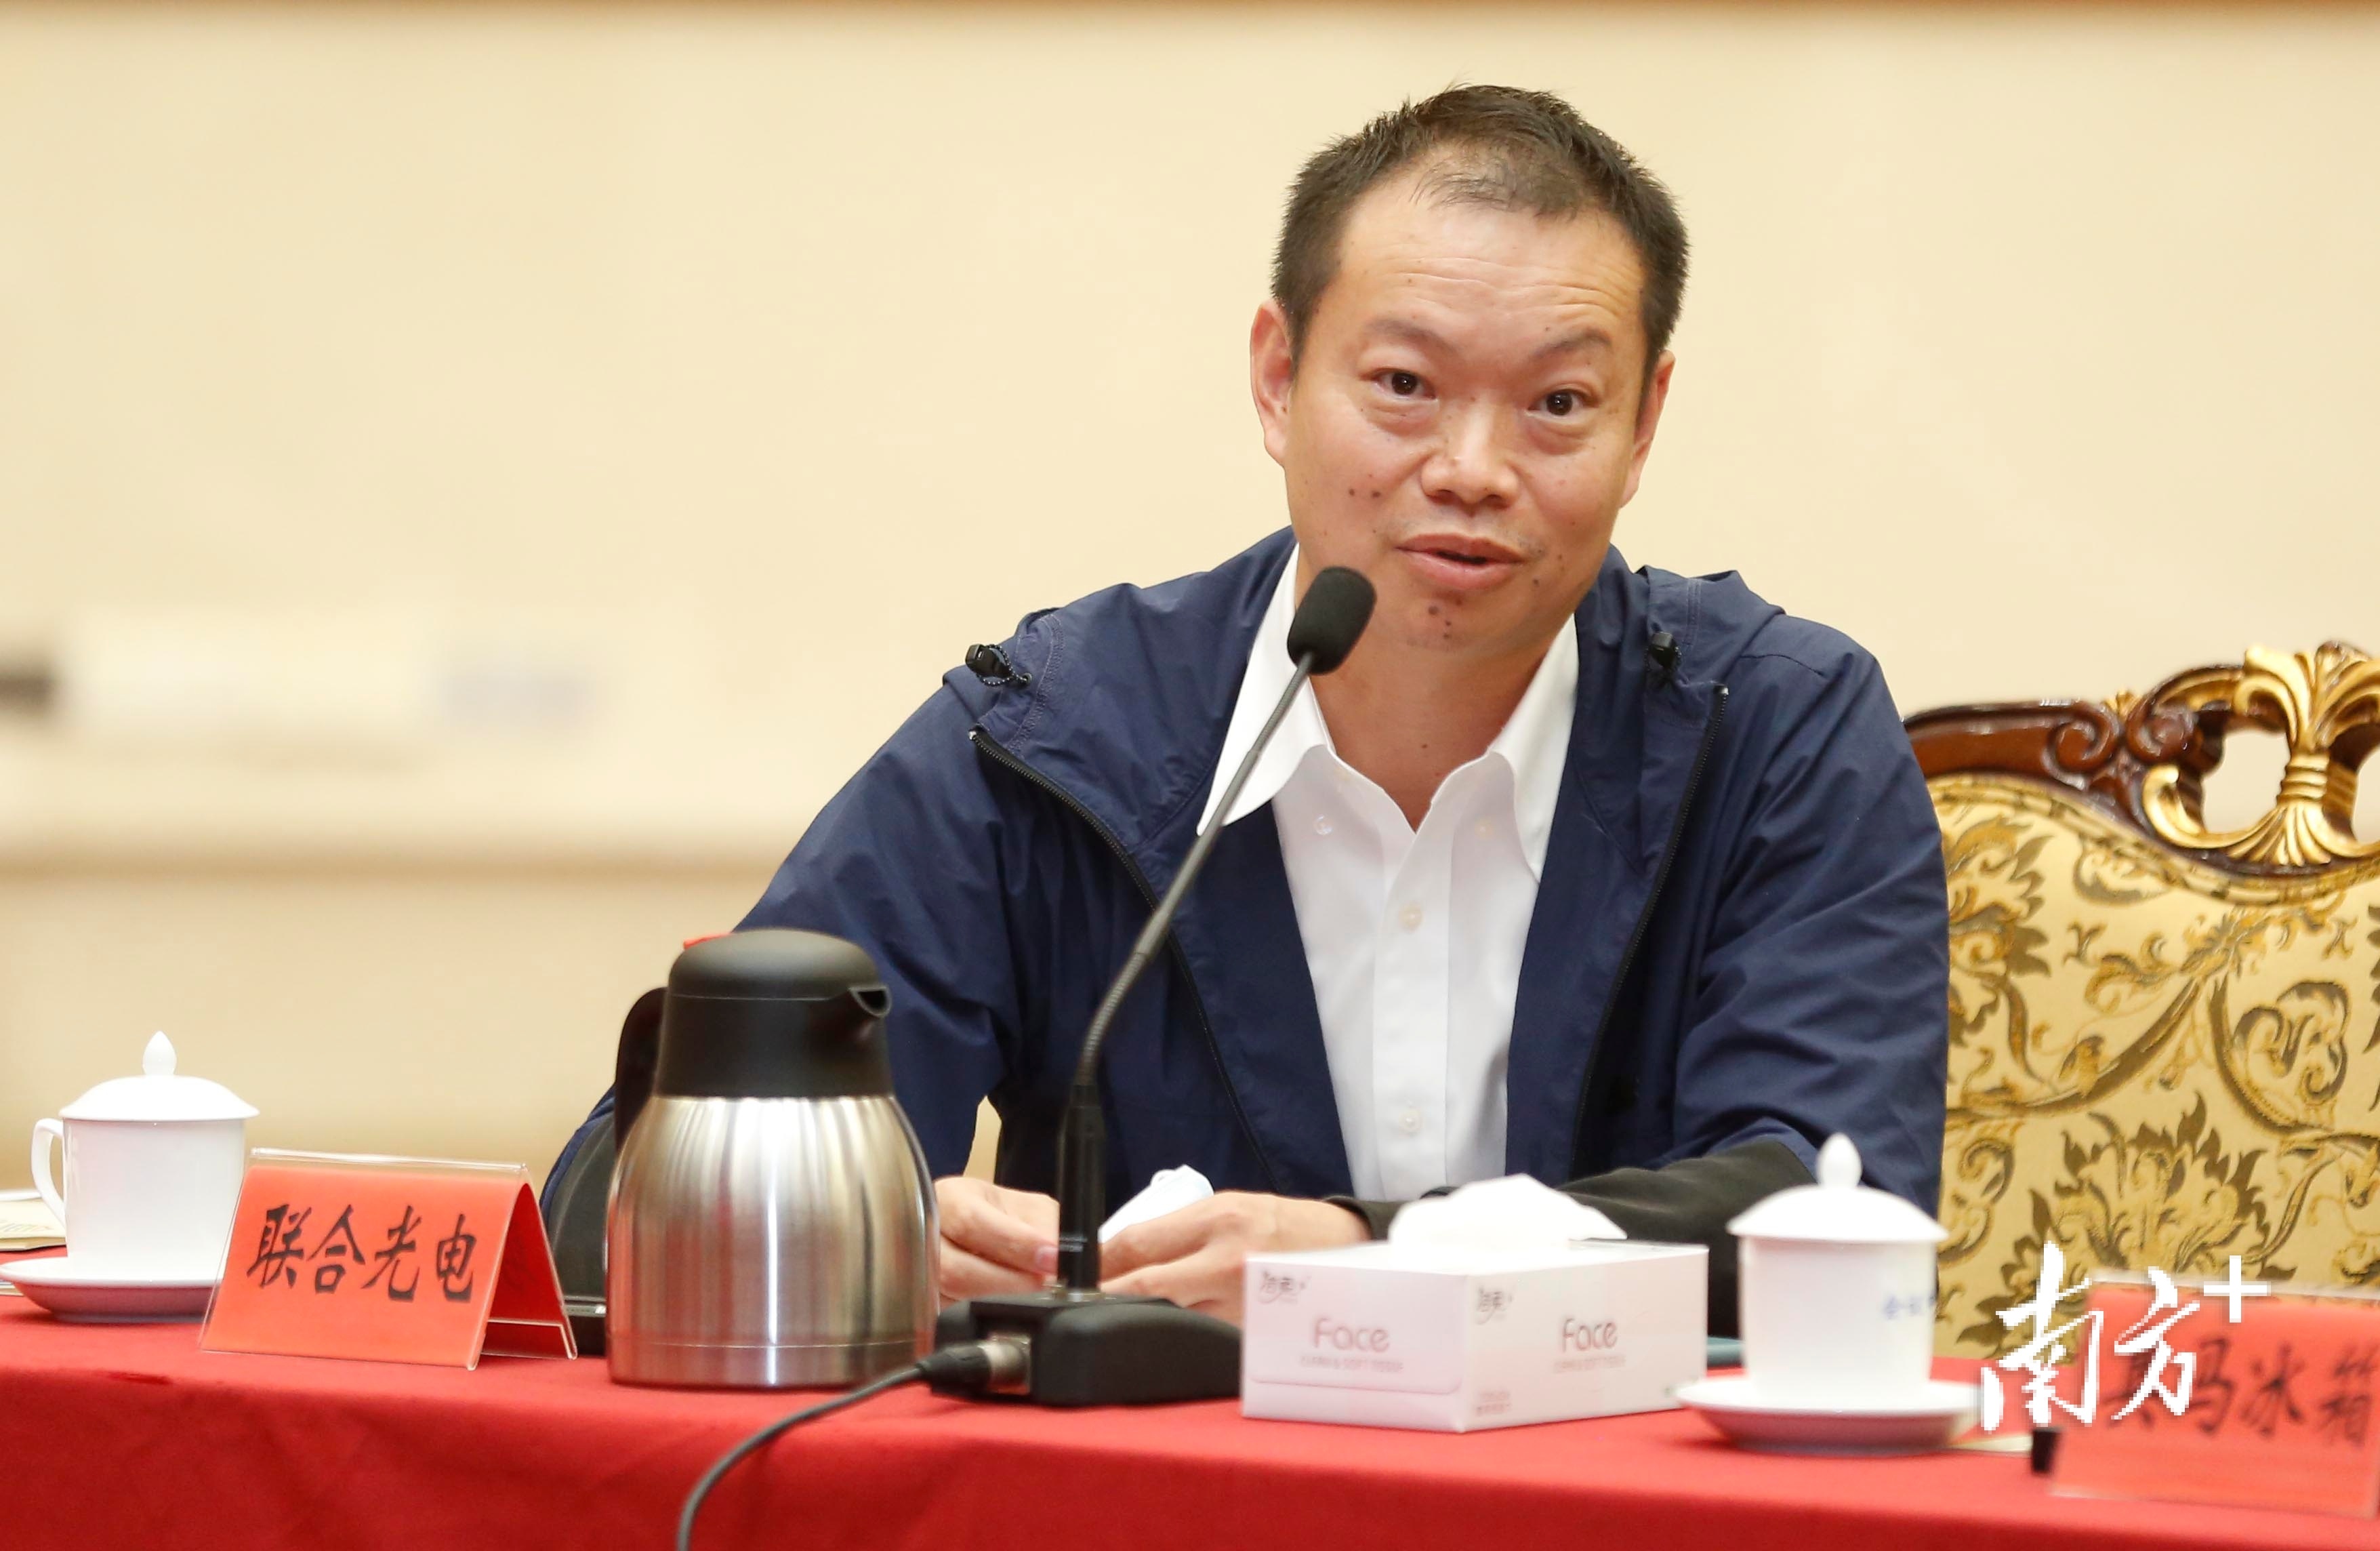 中山联合光电科技股份有限公司董事长龚俊强发言。